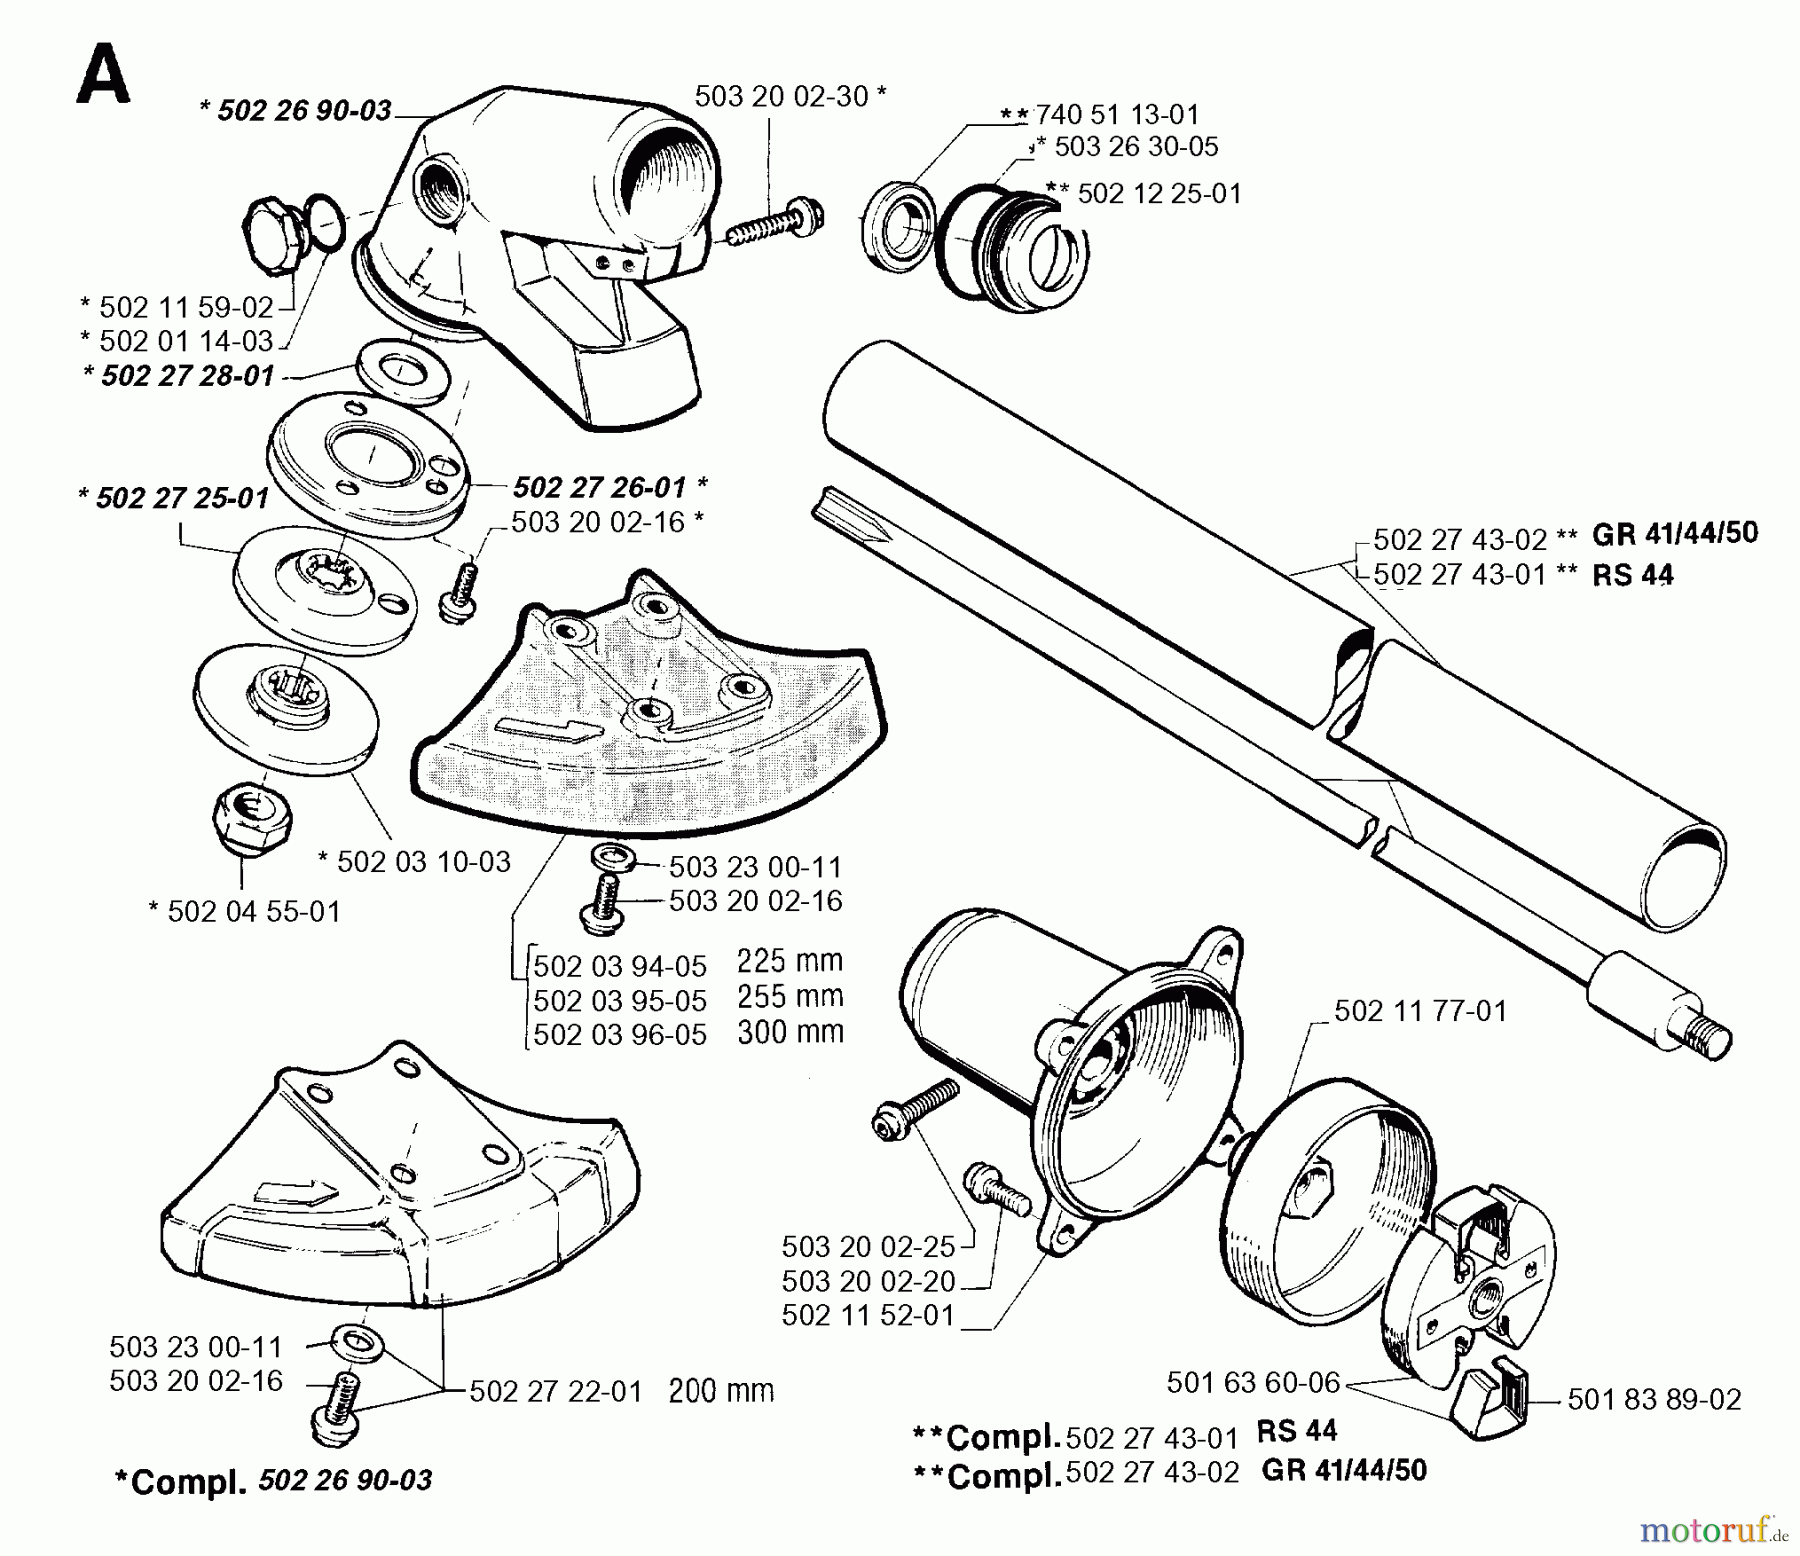  Jonsered Motorsensen, Trimmer GR44 - Jonsered String/Brush Trimmer (1994-03) BEVEL GEAR SHAFT